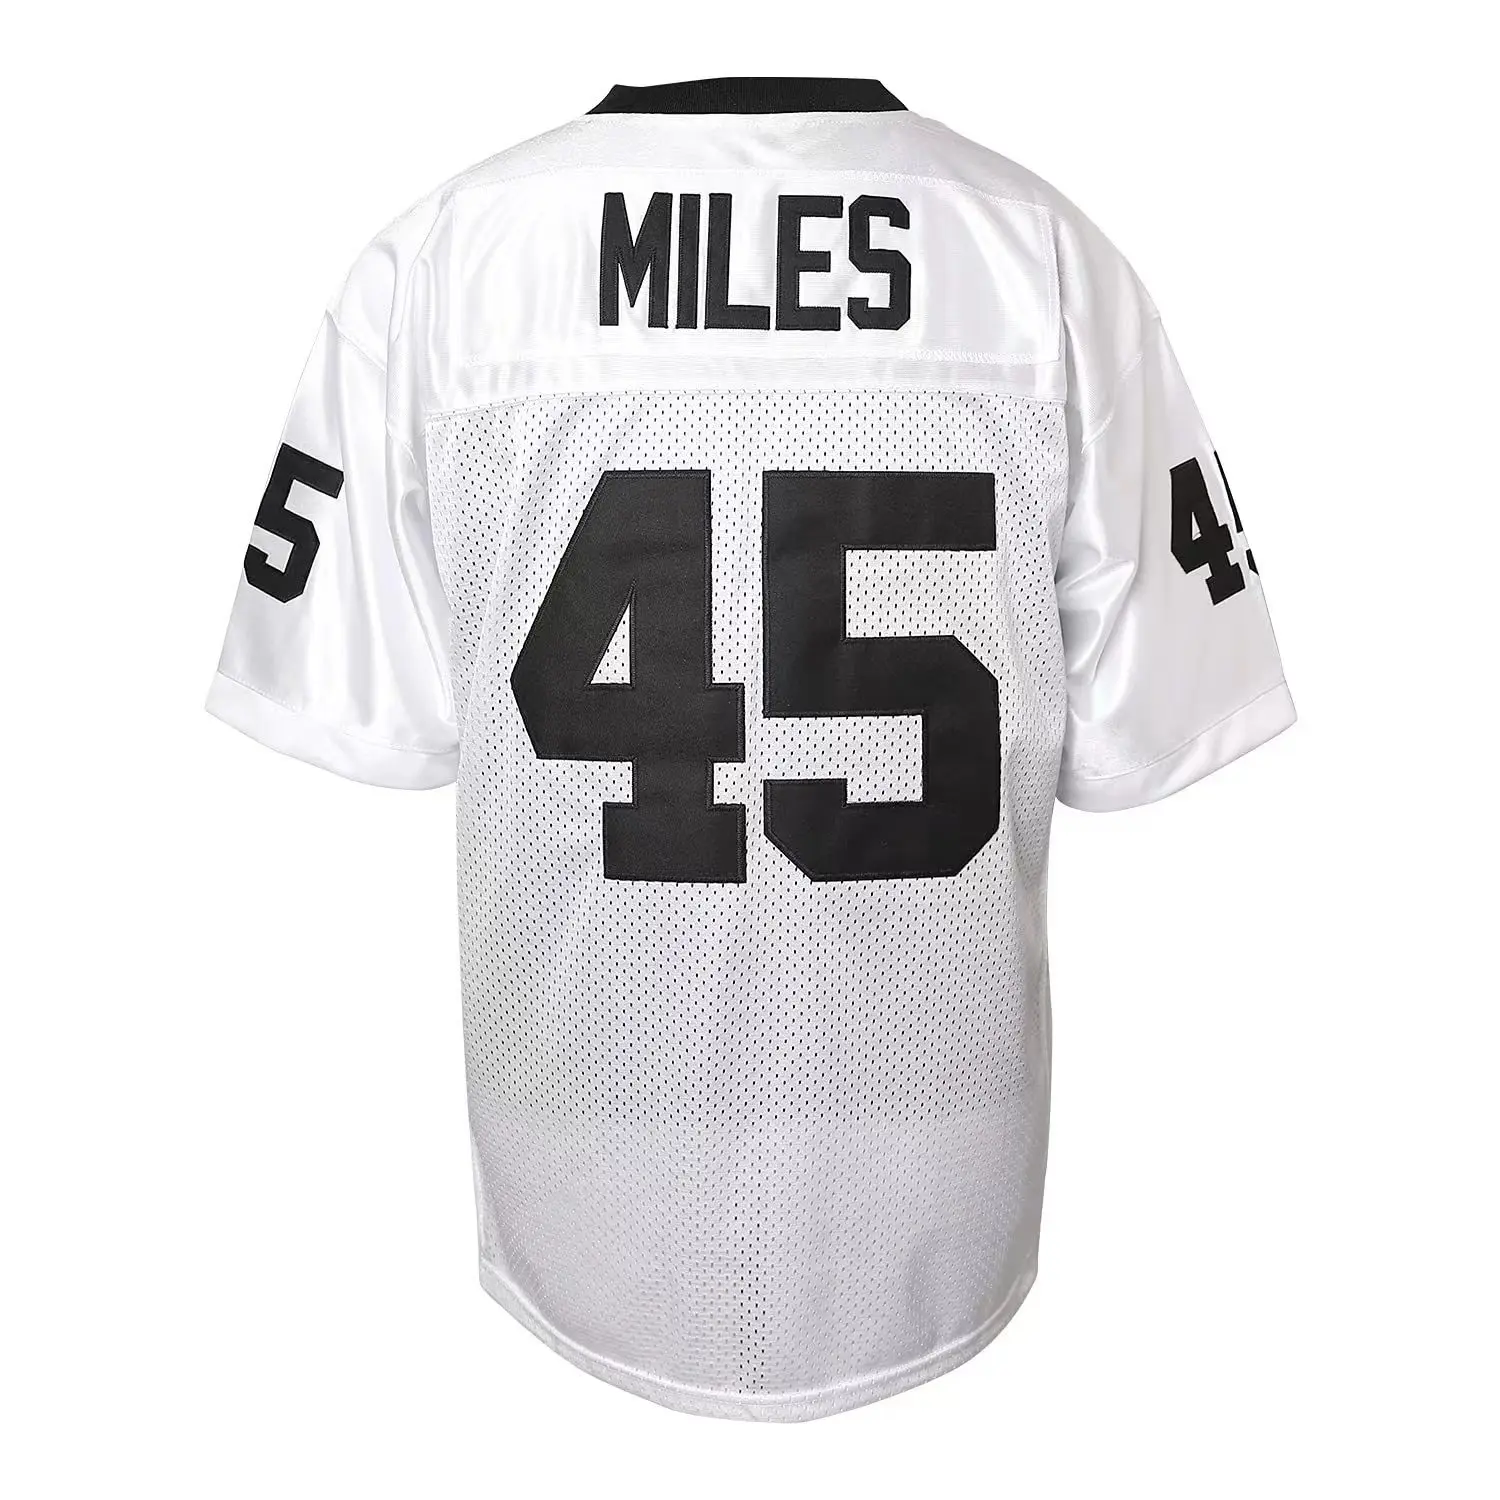 Boobie Miles-Futebol americano Sport Jersey, Camisa Permiano, Bordados, Costura, Sportswear ao ar livre, roupas soltas, de alta qualidade, #45